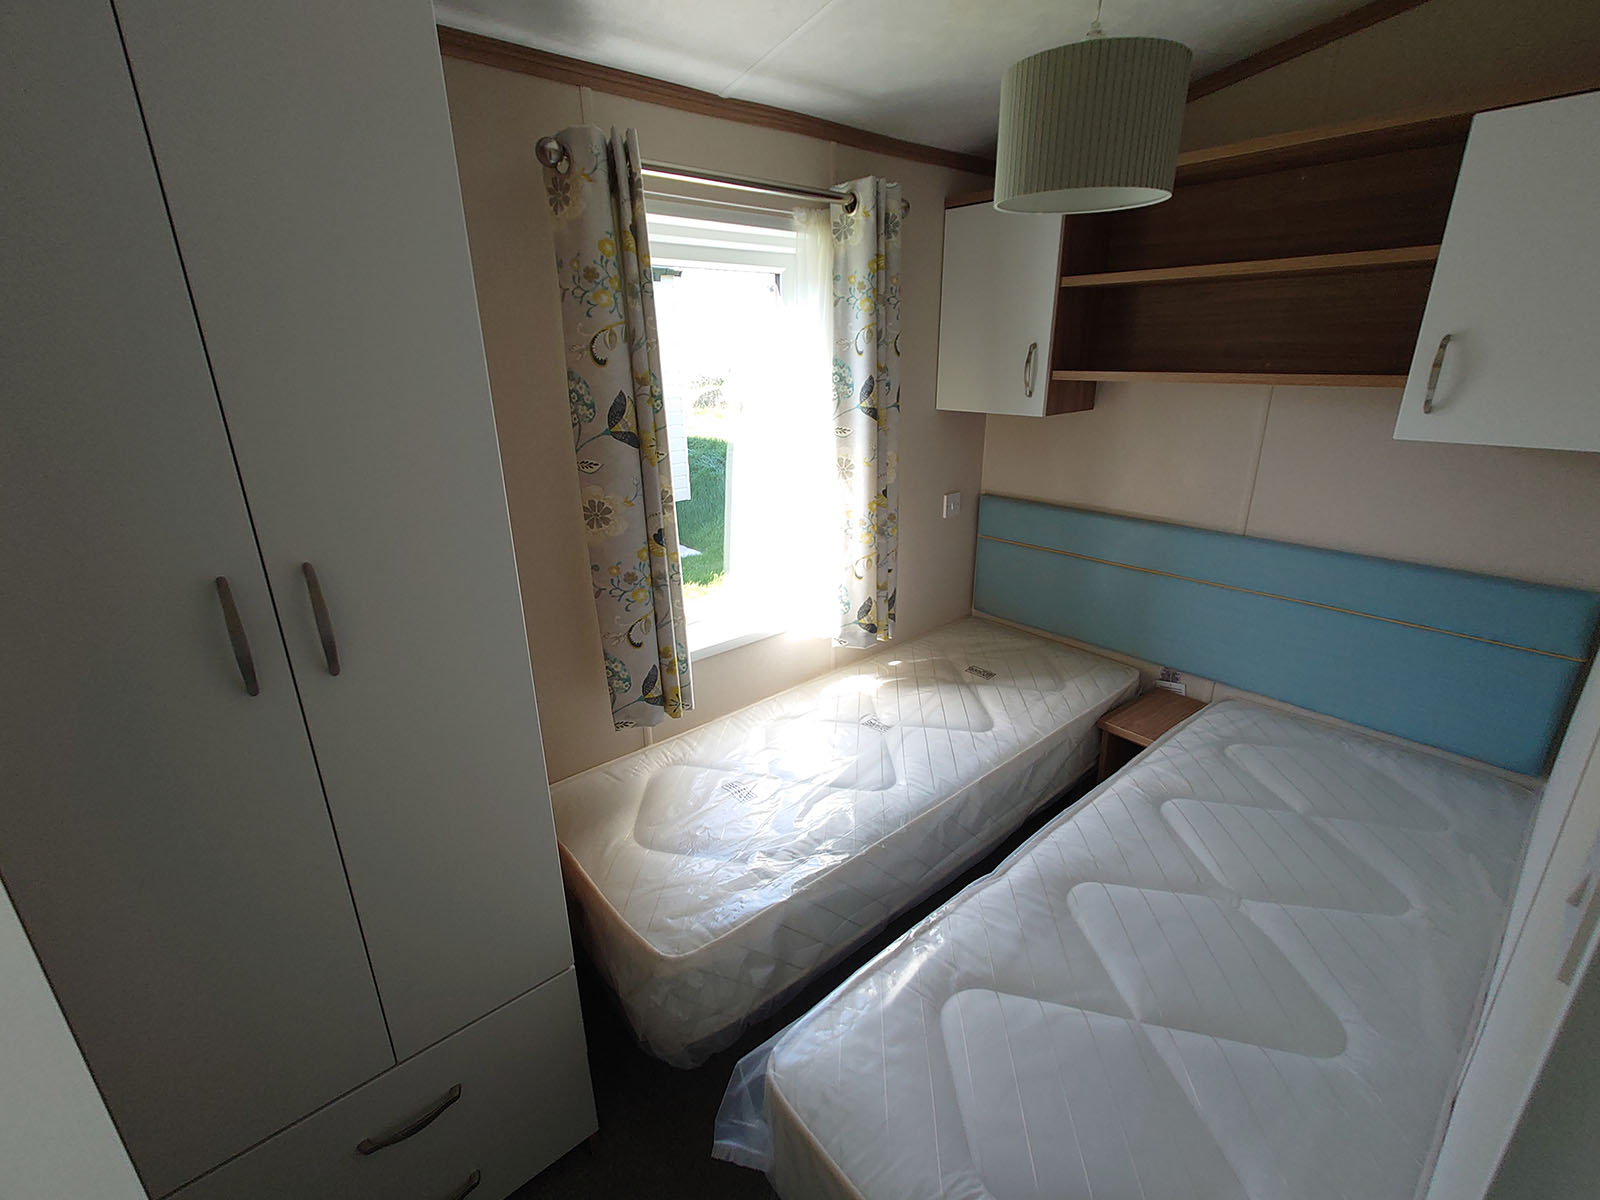 Pemberton Marlow in Seaview Park Cornwall Bedroom 2